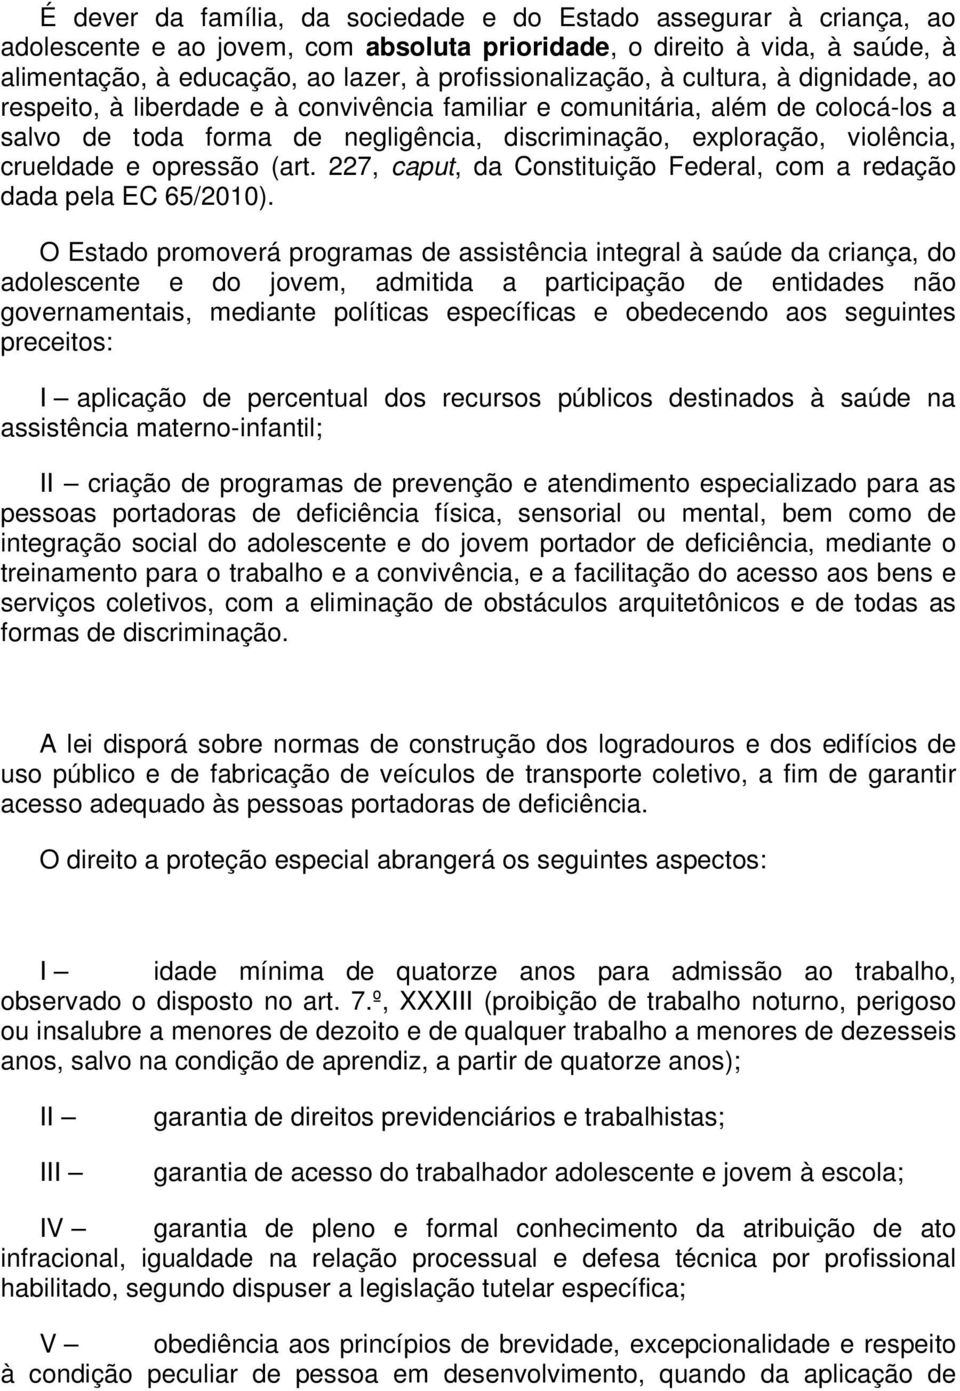 violência, crueldade e opressão (art. 227, caput, da Constituição Federal, com a redação dada pela EC 65/2010).